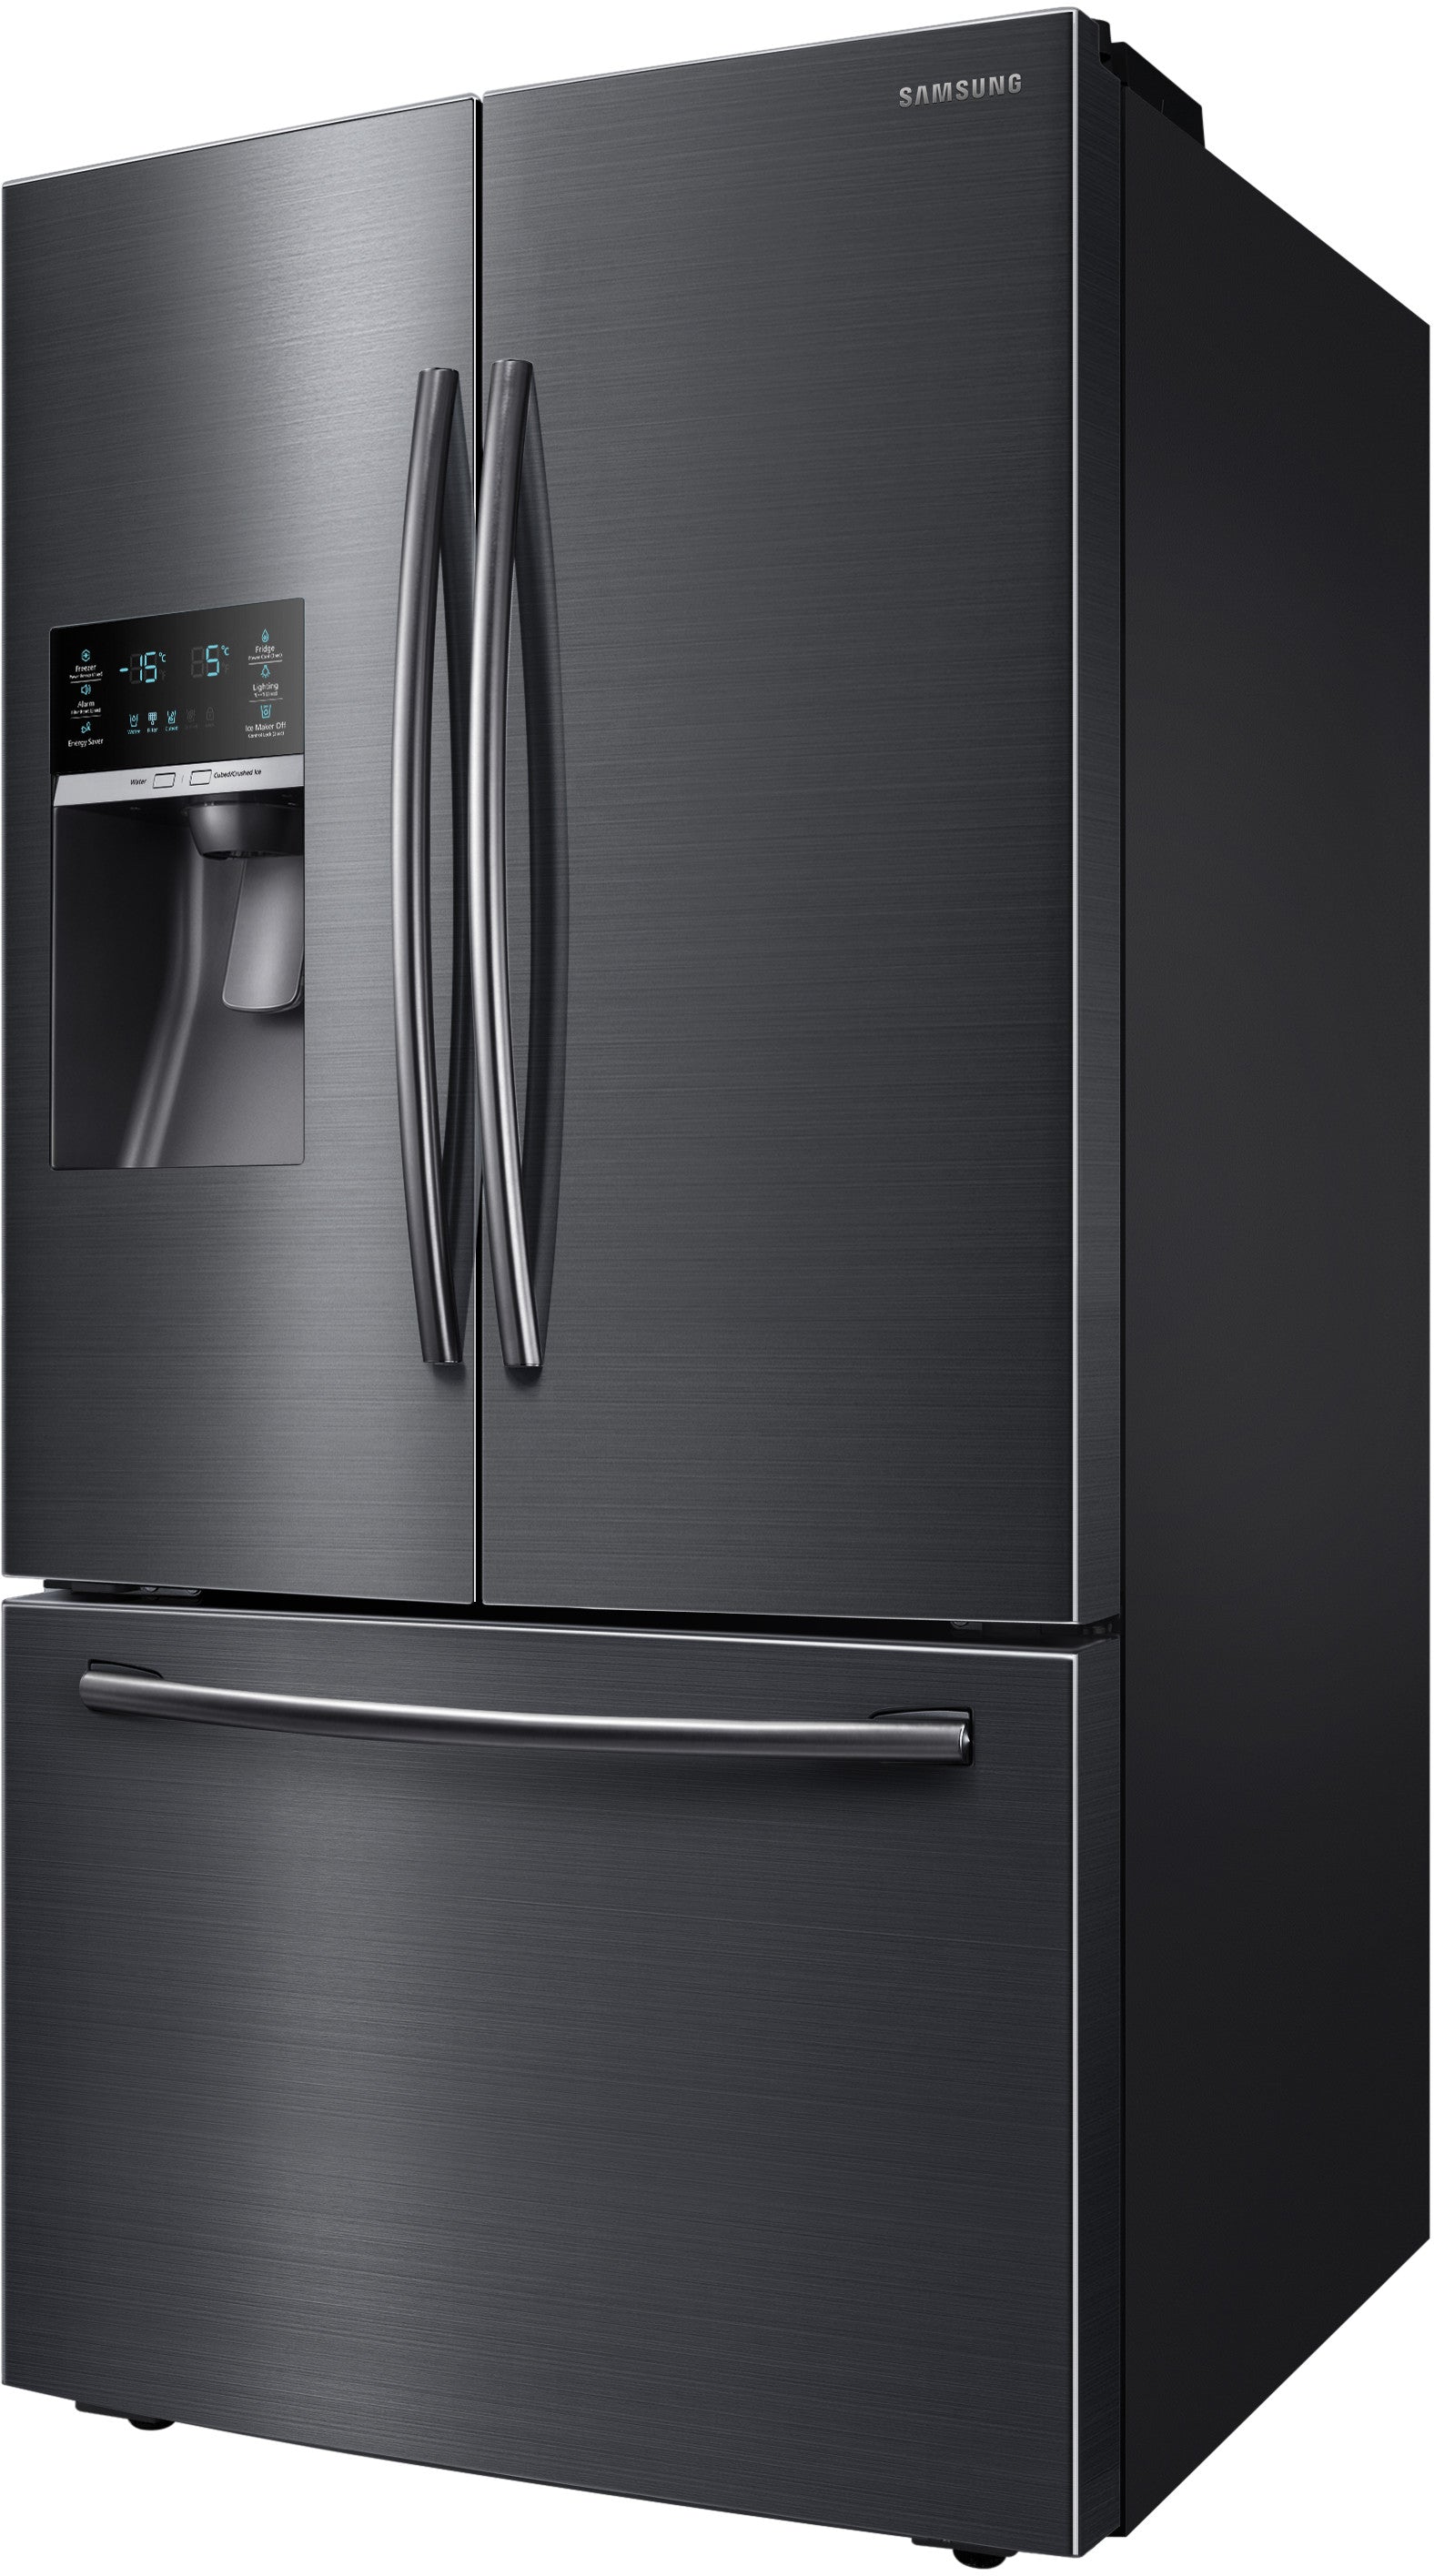 Samsung RF28HFEDBSG/AA 28 Cu. Ft. French Door Refrigerator